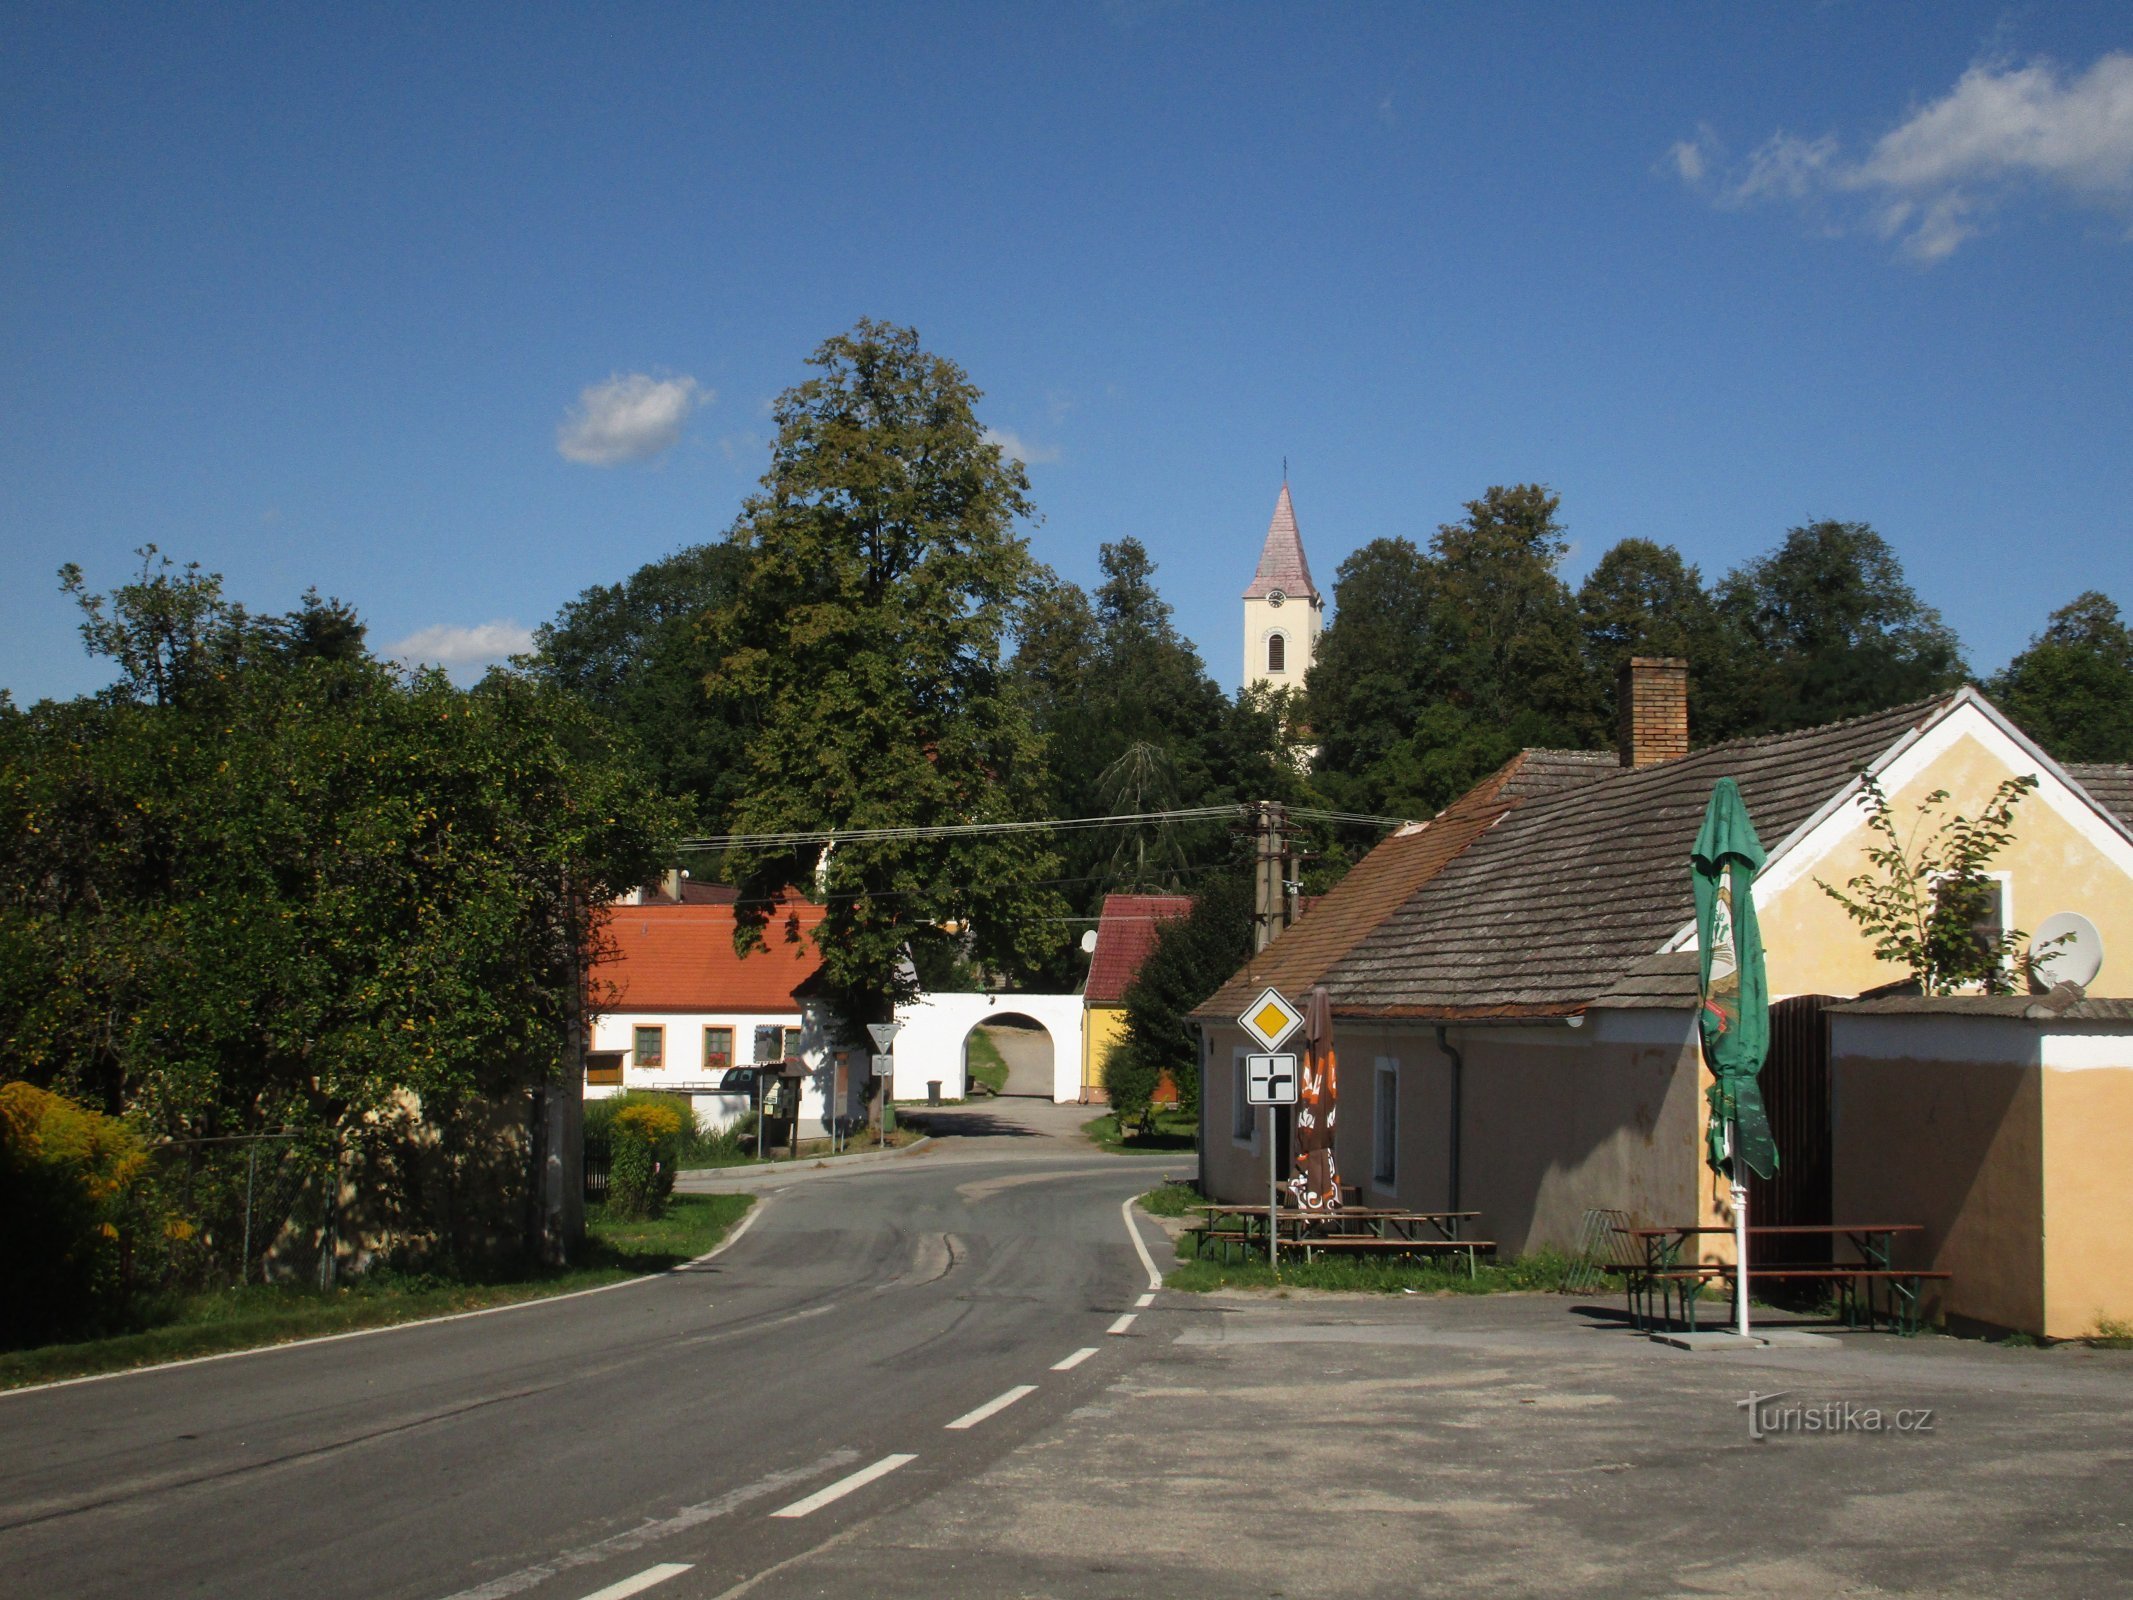 quang cảnh ngôi làng từ đường 153 đến từ Chlum u Třeboň